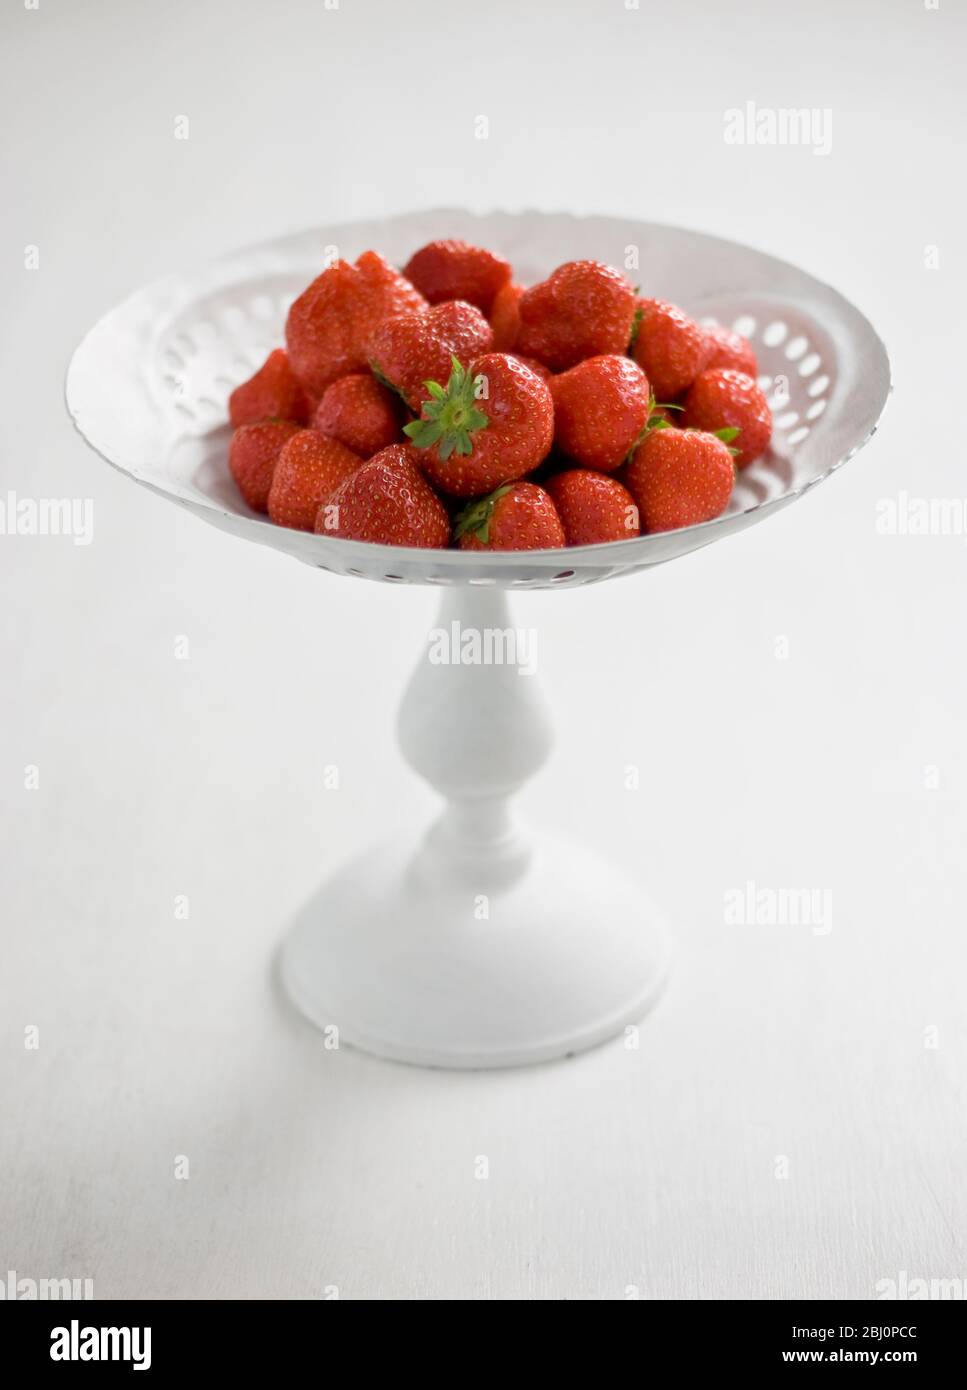 Englische Erdbeeren auf weiß lackiertem Ständer - Stockfoto